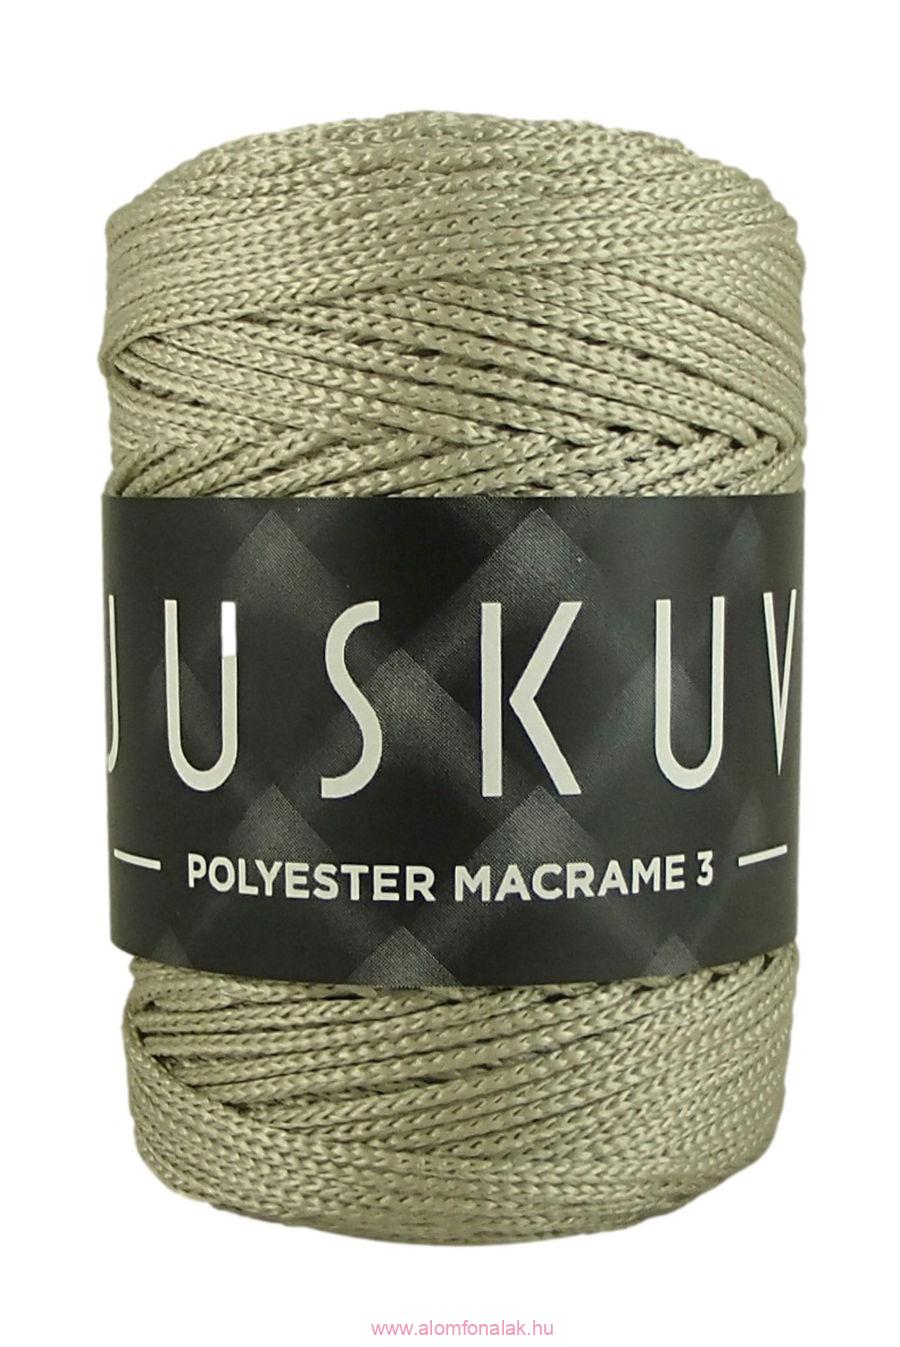 Polyester macrame Juskuv 44 - bézs